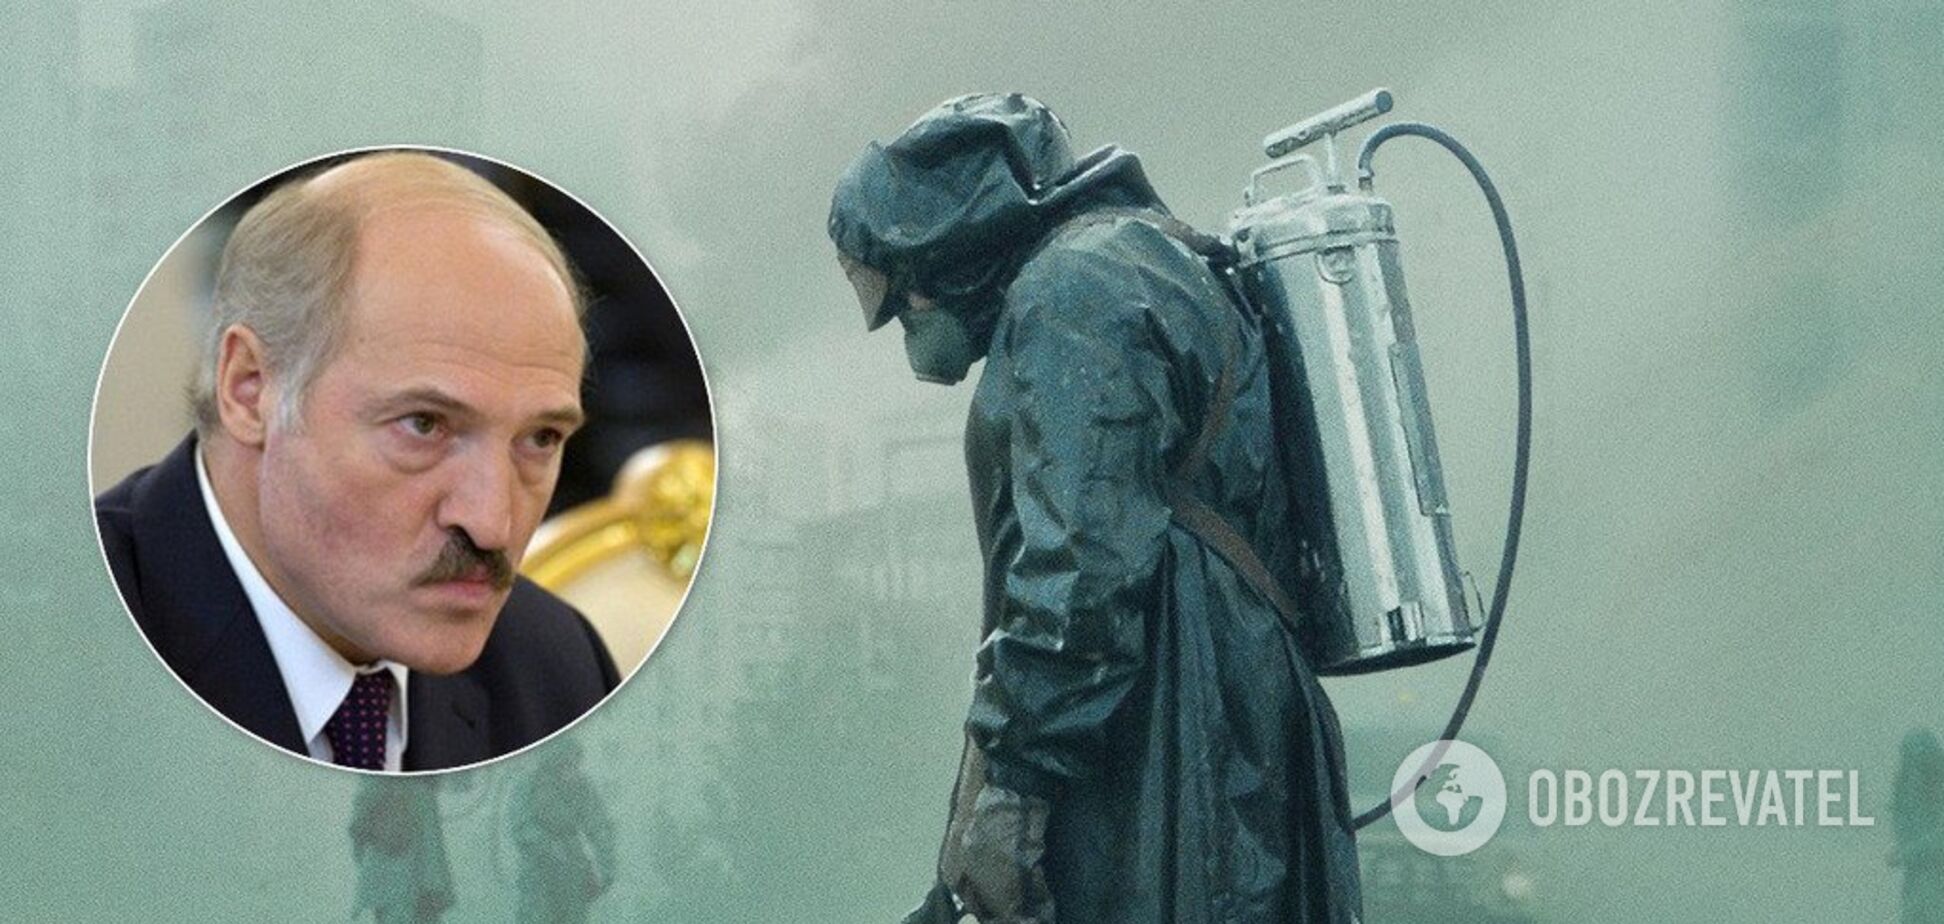 Из-за Чернобыля: Лукашенко поставил Путину жесткое условие по газу